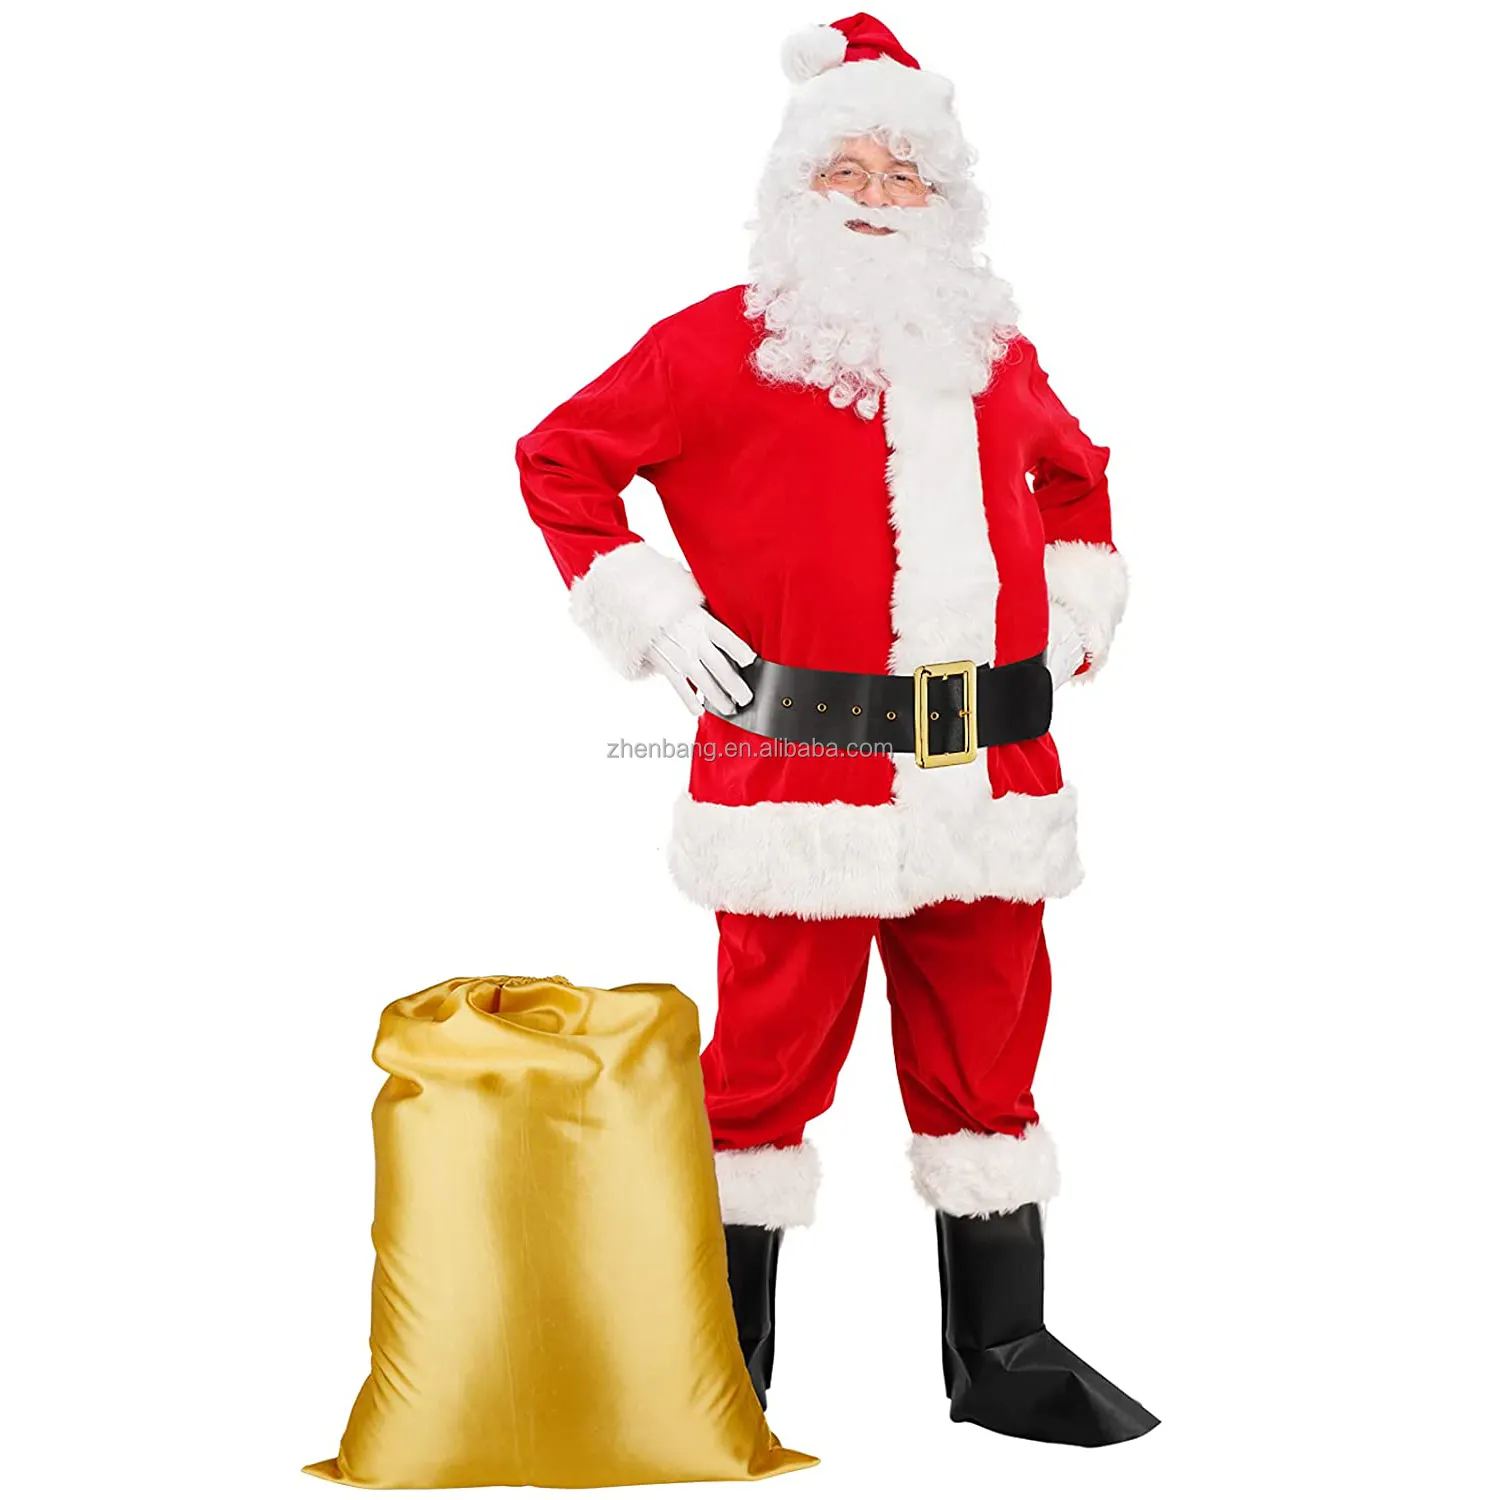 Santa Claus Kostüm Herren Deluxe Santa Kostüm Erwachsene Santa Suit Weihnachts outfits